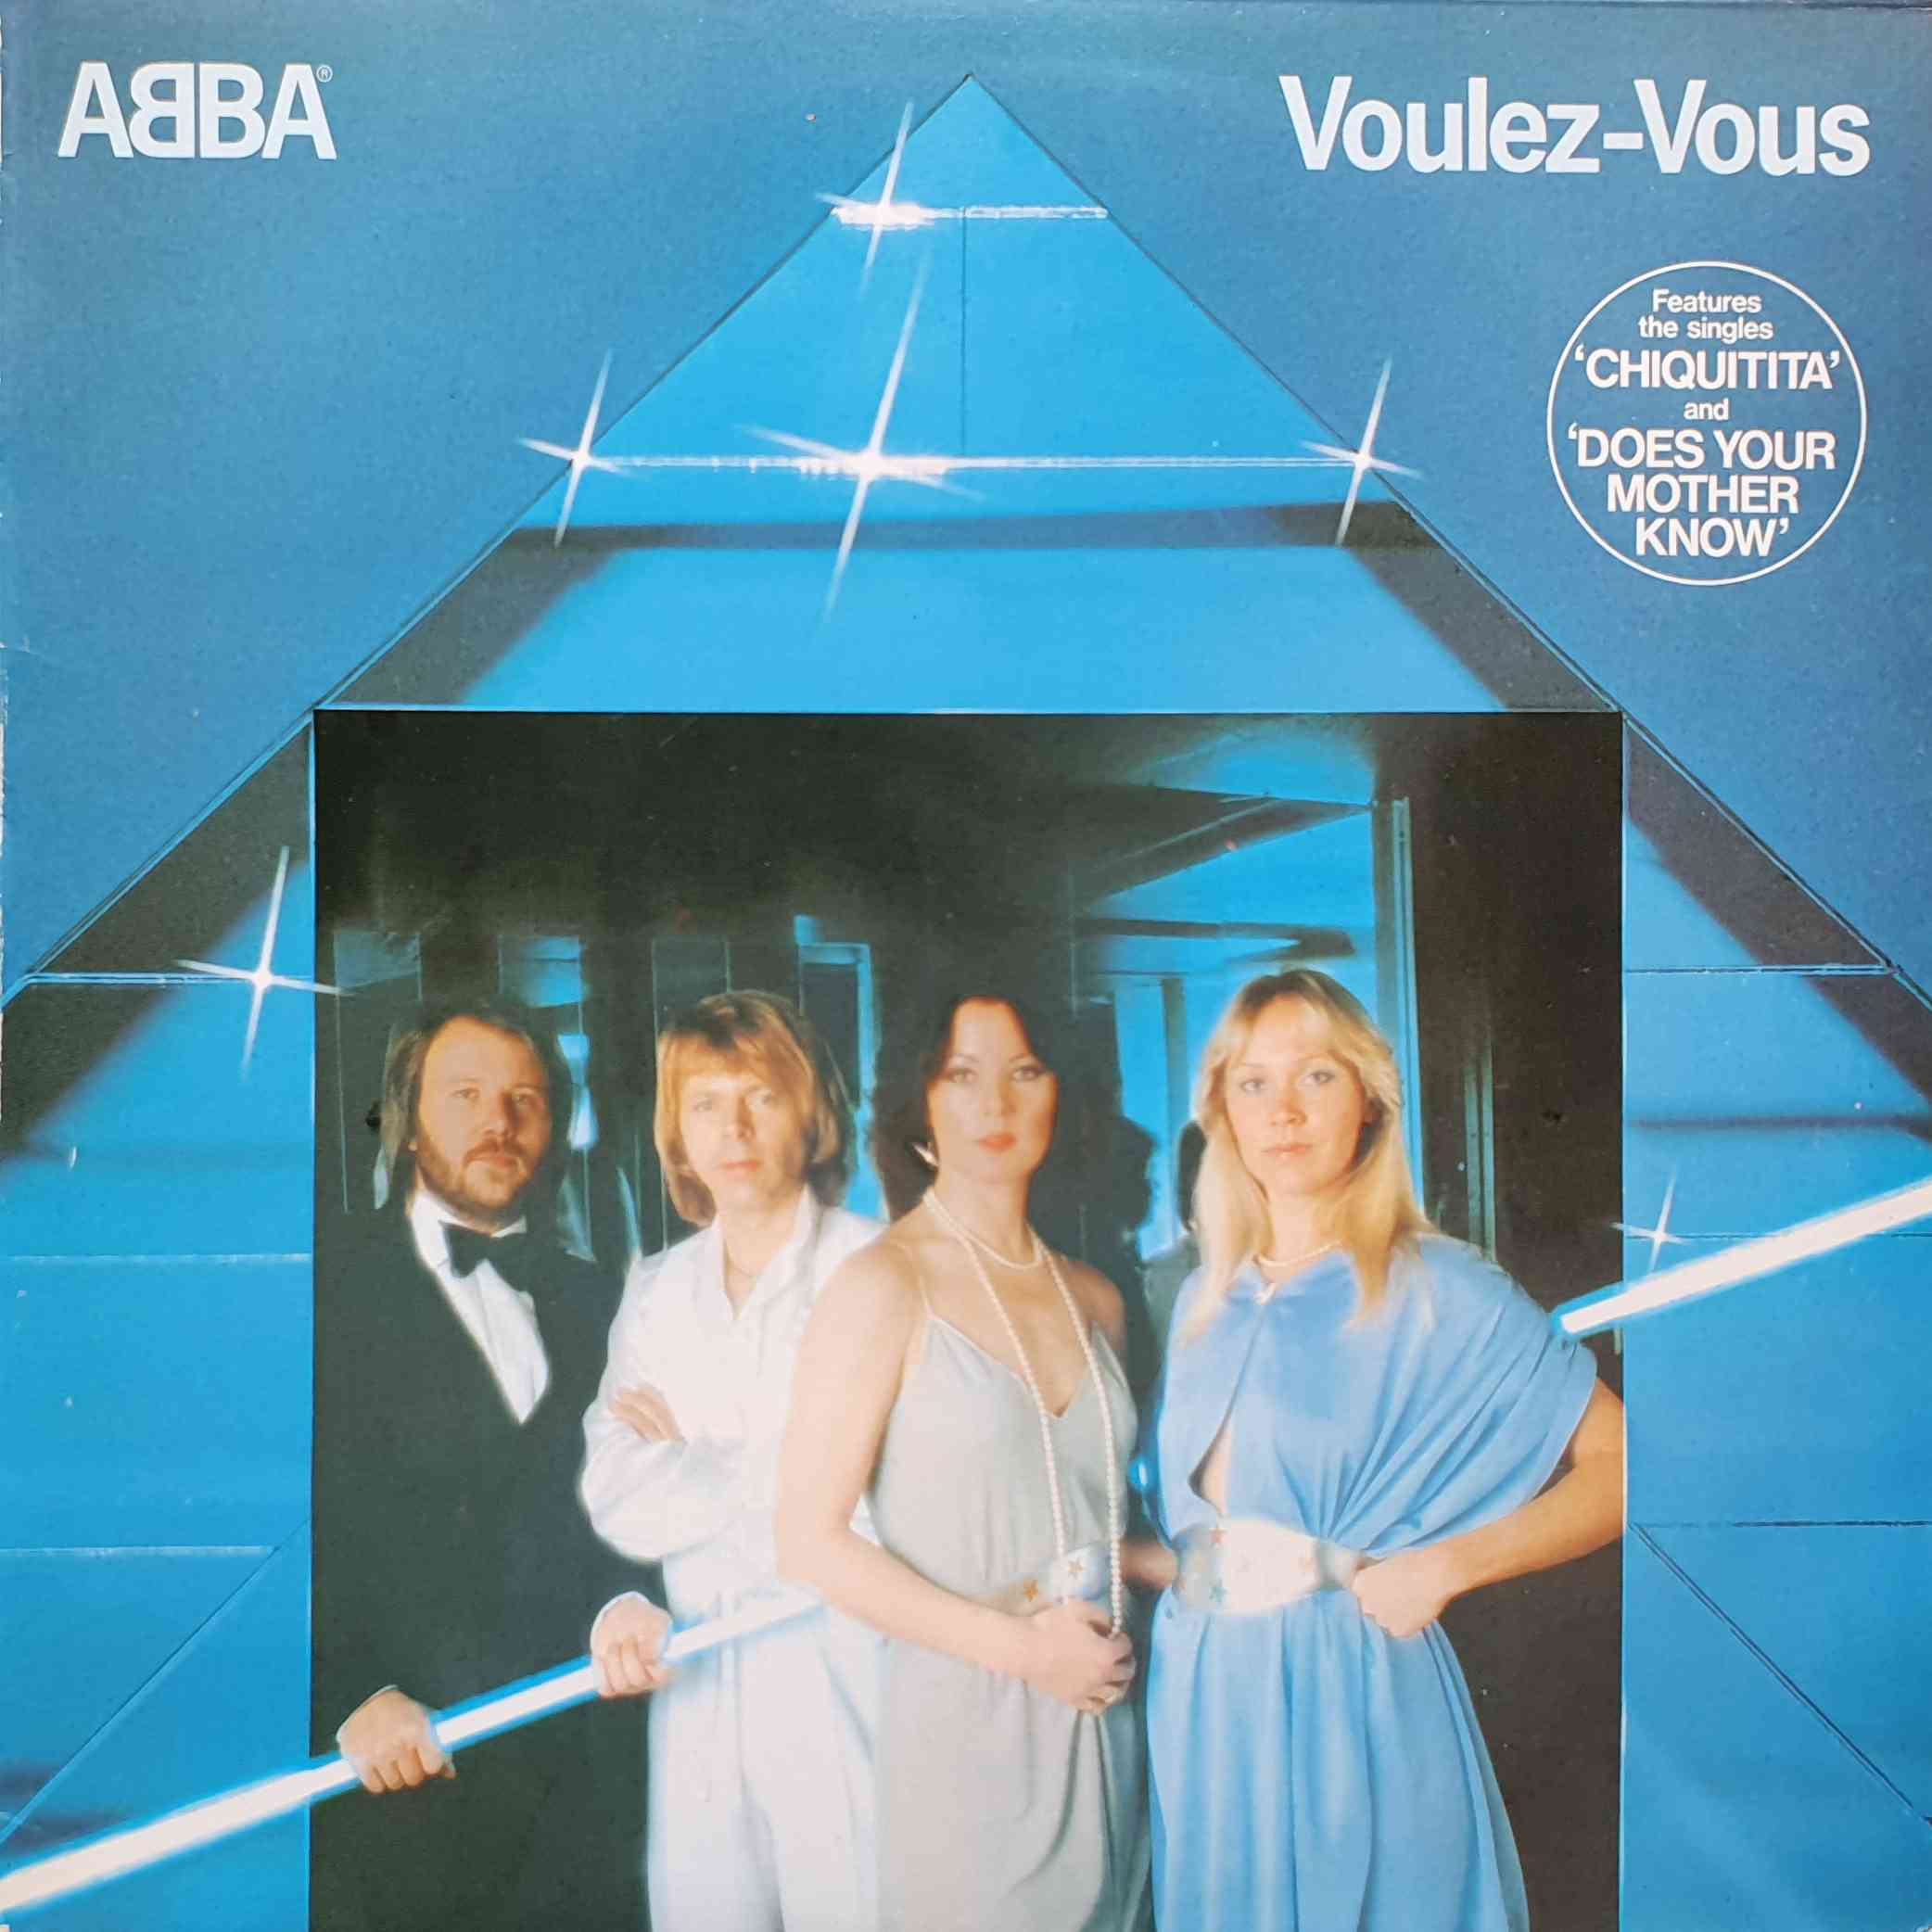 Picture of EPC 86086 Voulez-vous album by artist Abba 